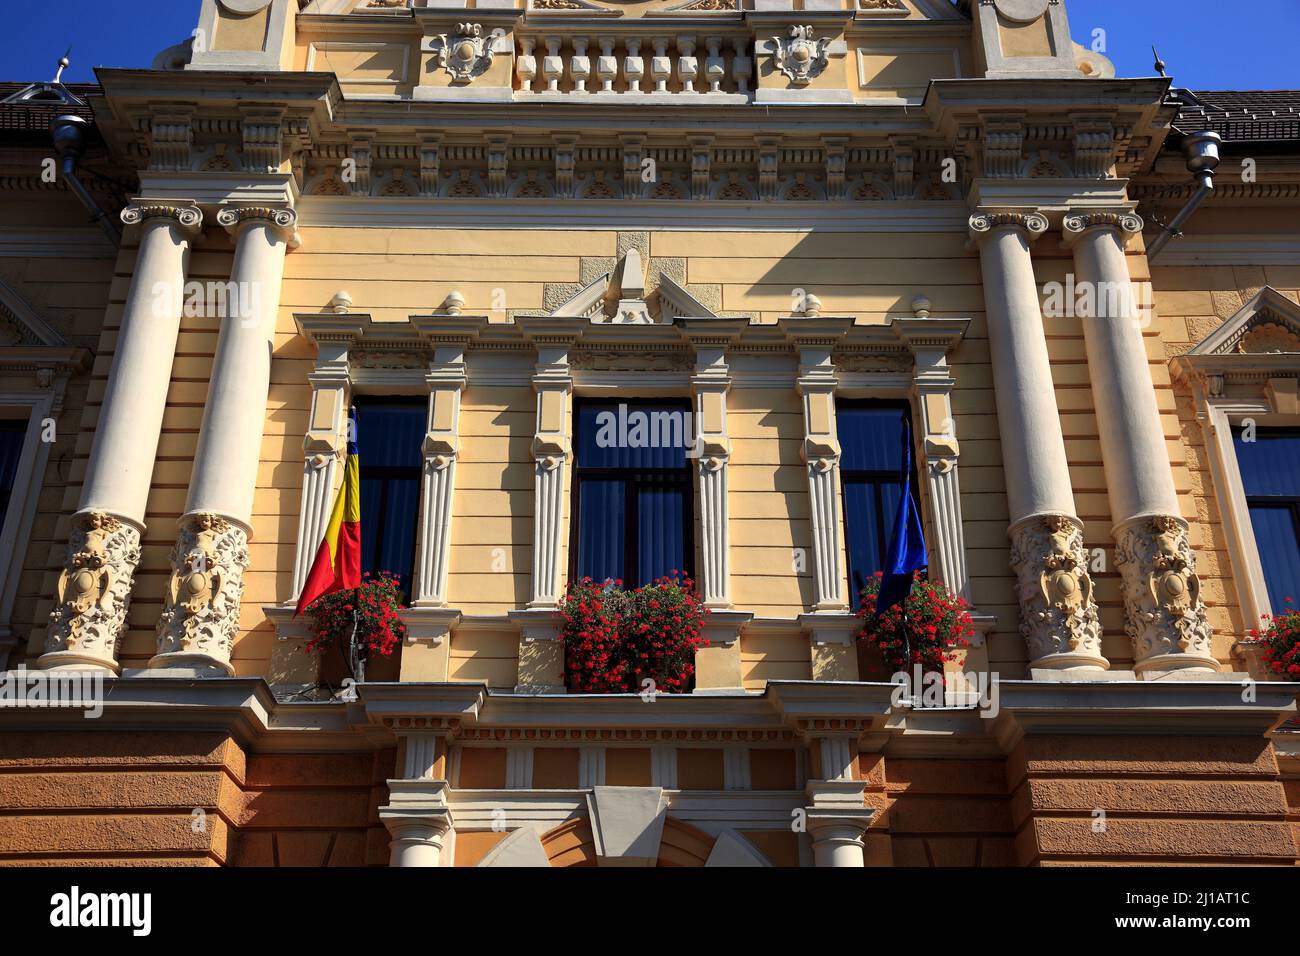 Historisches Rathaus von Brasov, Kronstadt, Siebenbürgen, Rumänien / Historisches Rathaus von Brasov, Brasov, Siebenbürgen, Rumänien (Aufnahmedatum k Stockfoto